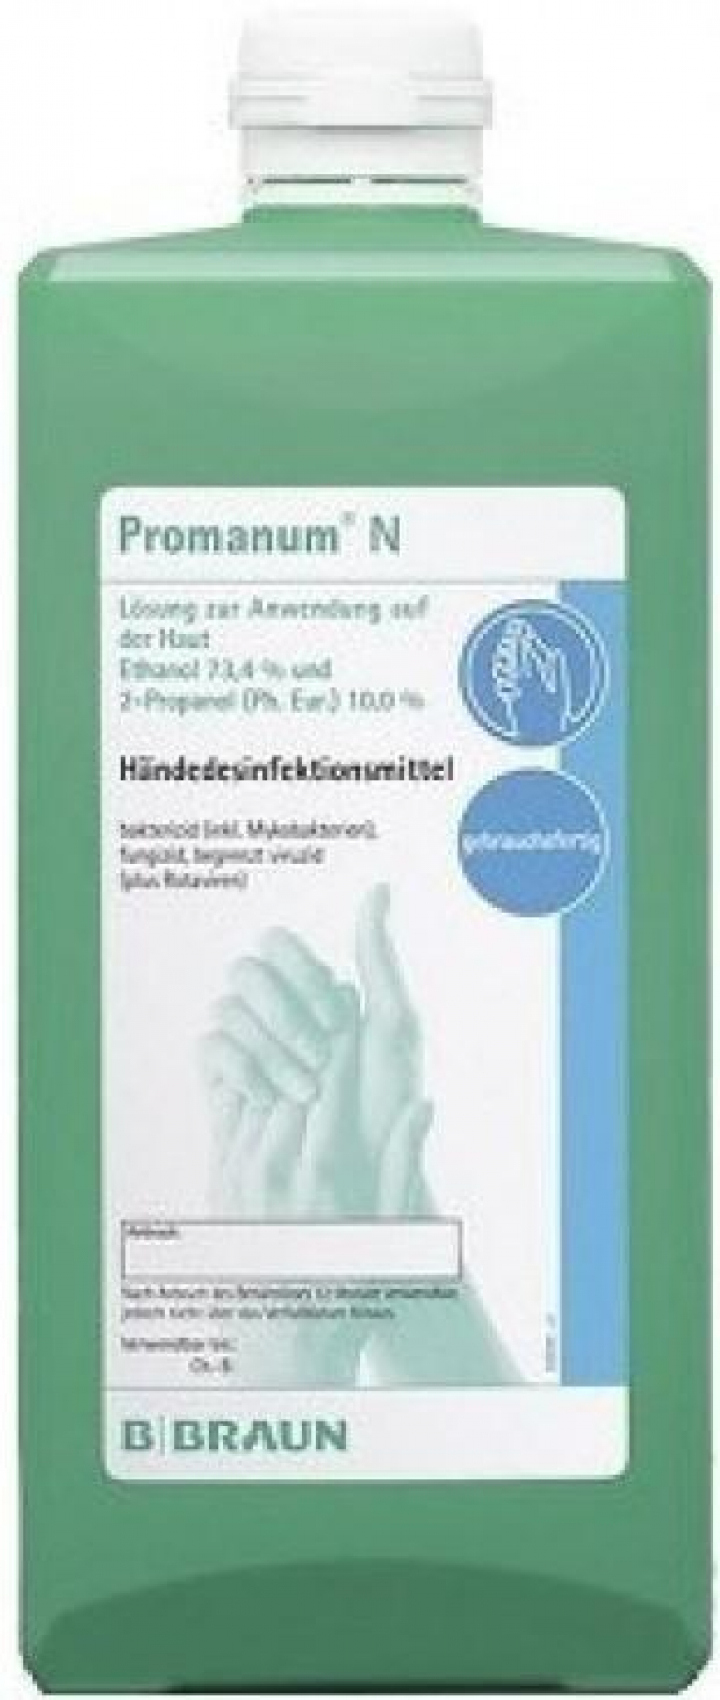 Desinfectante alcoólico com dermoprotector para mãos Promanum 500ml